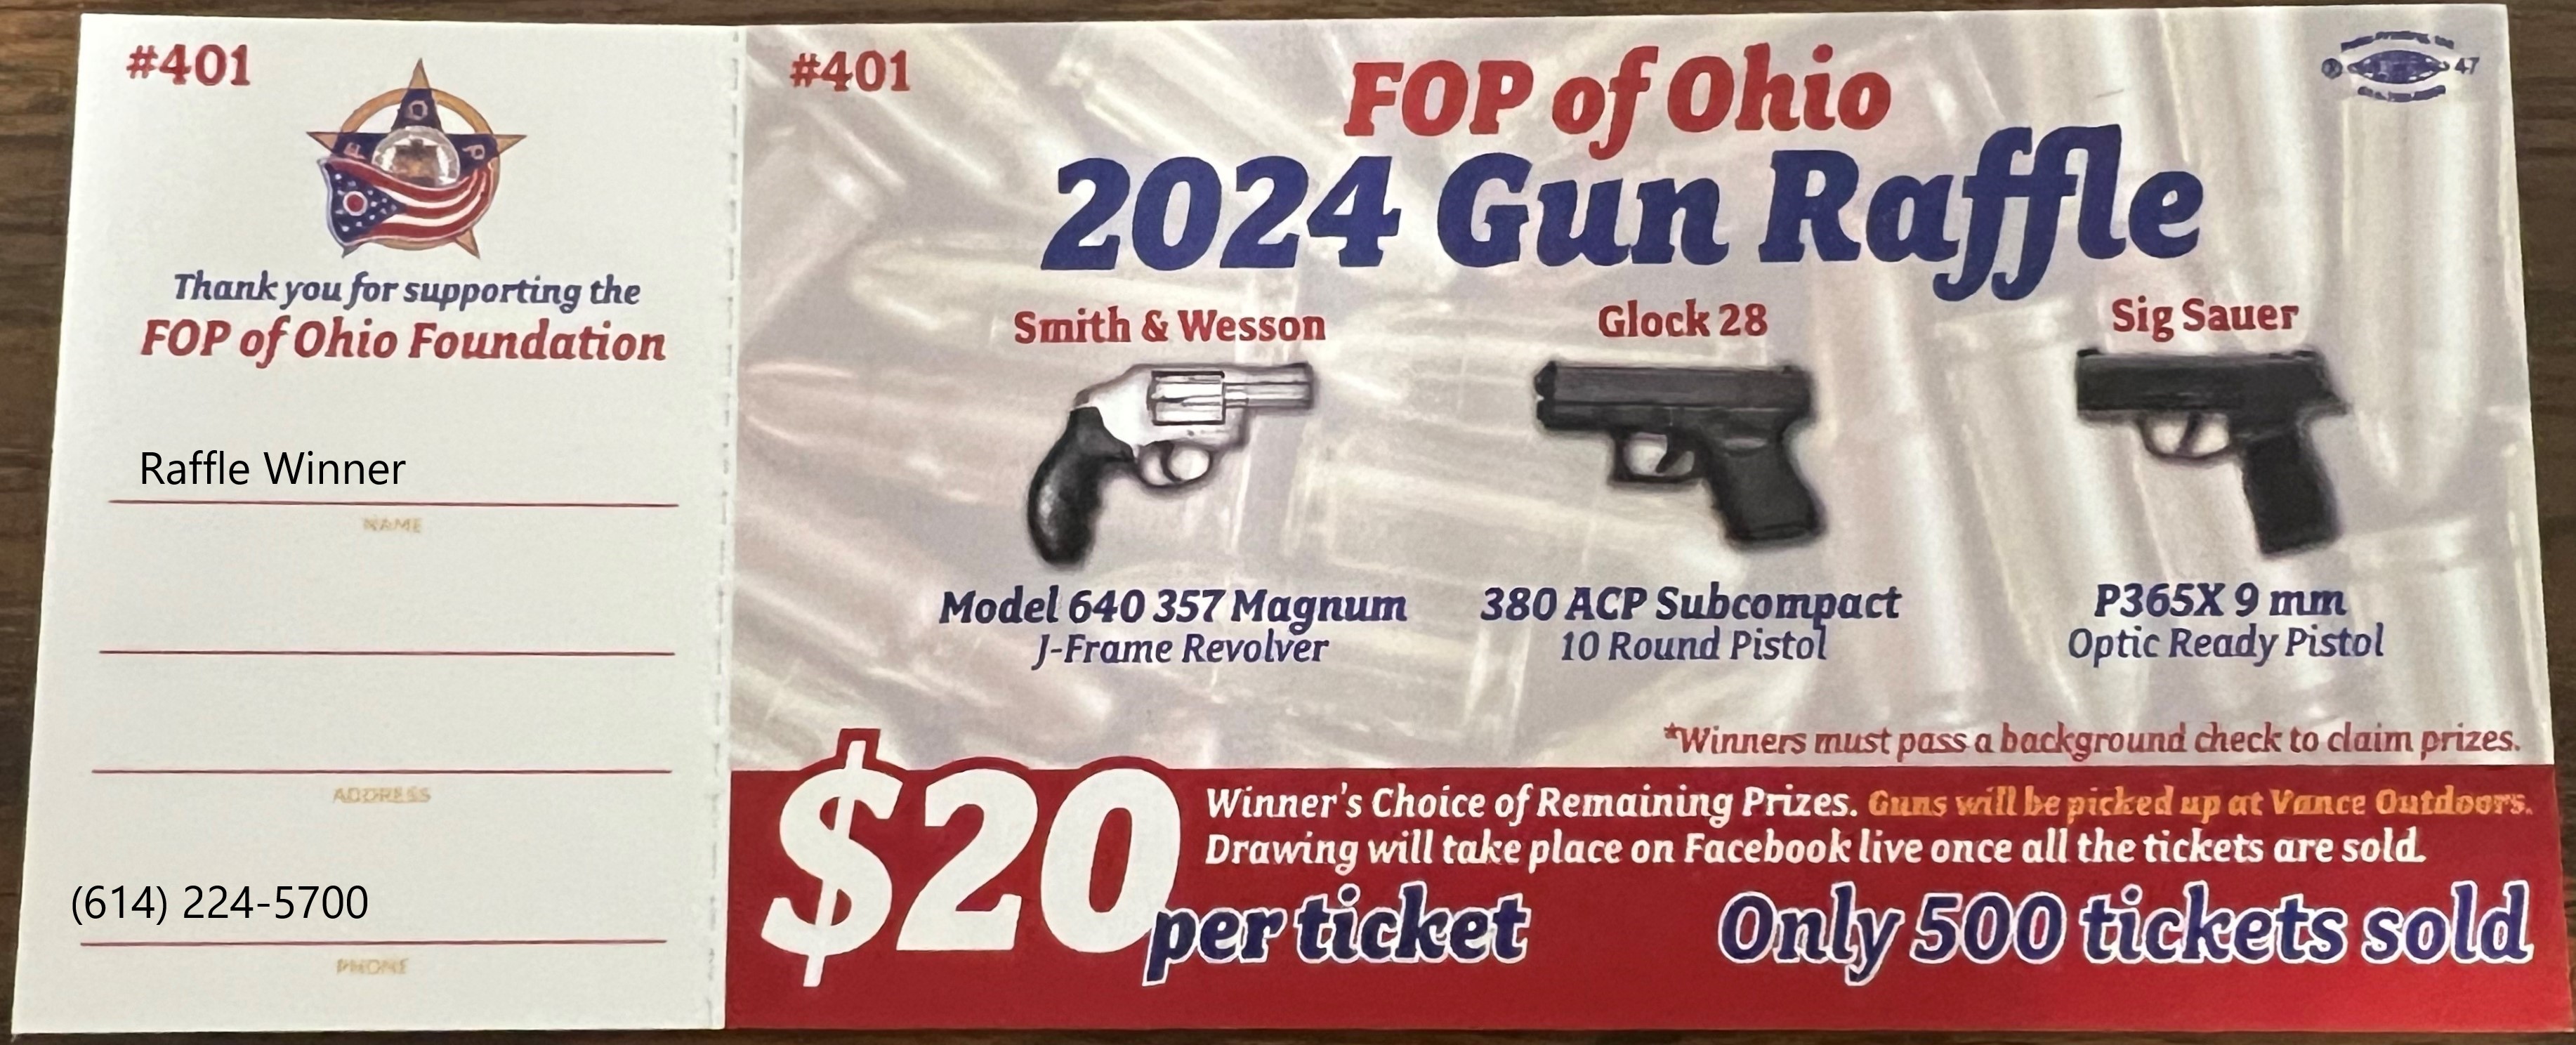 FOP of Ohio Foundation 2024 Gun Raffle FOP of Ohio Foundation